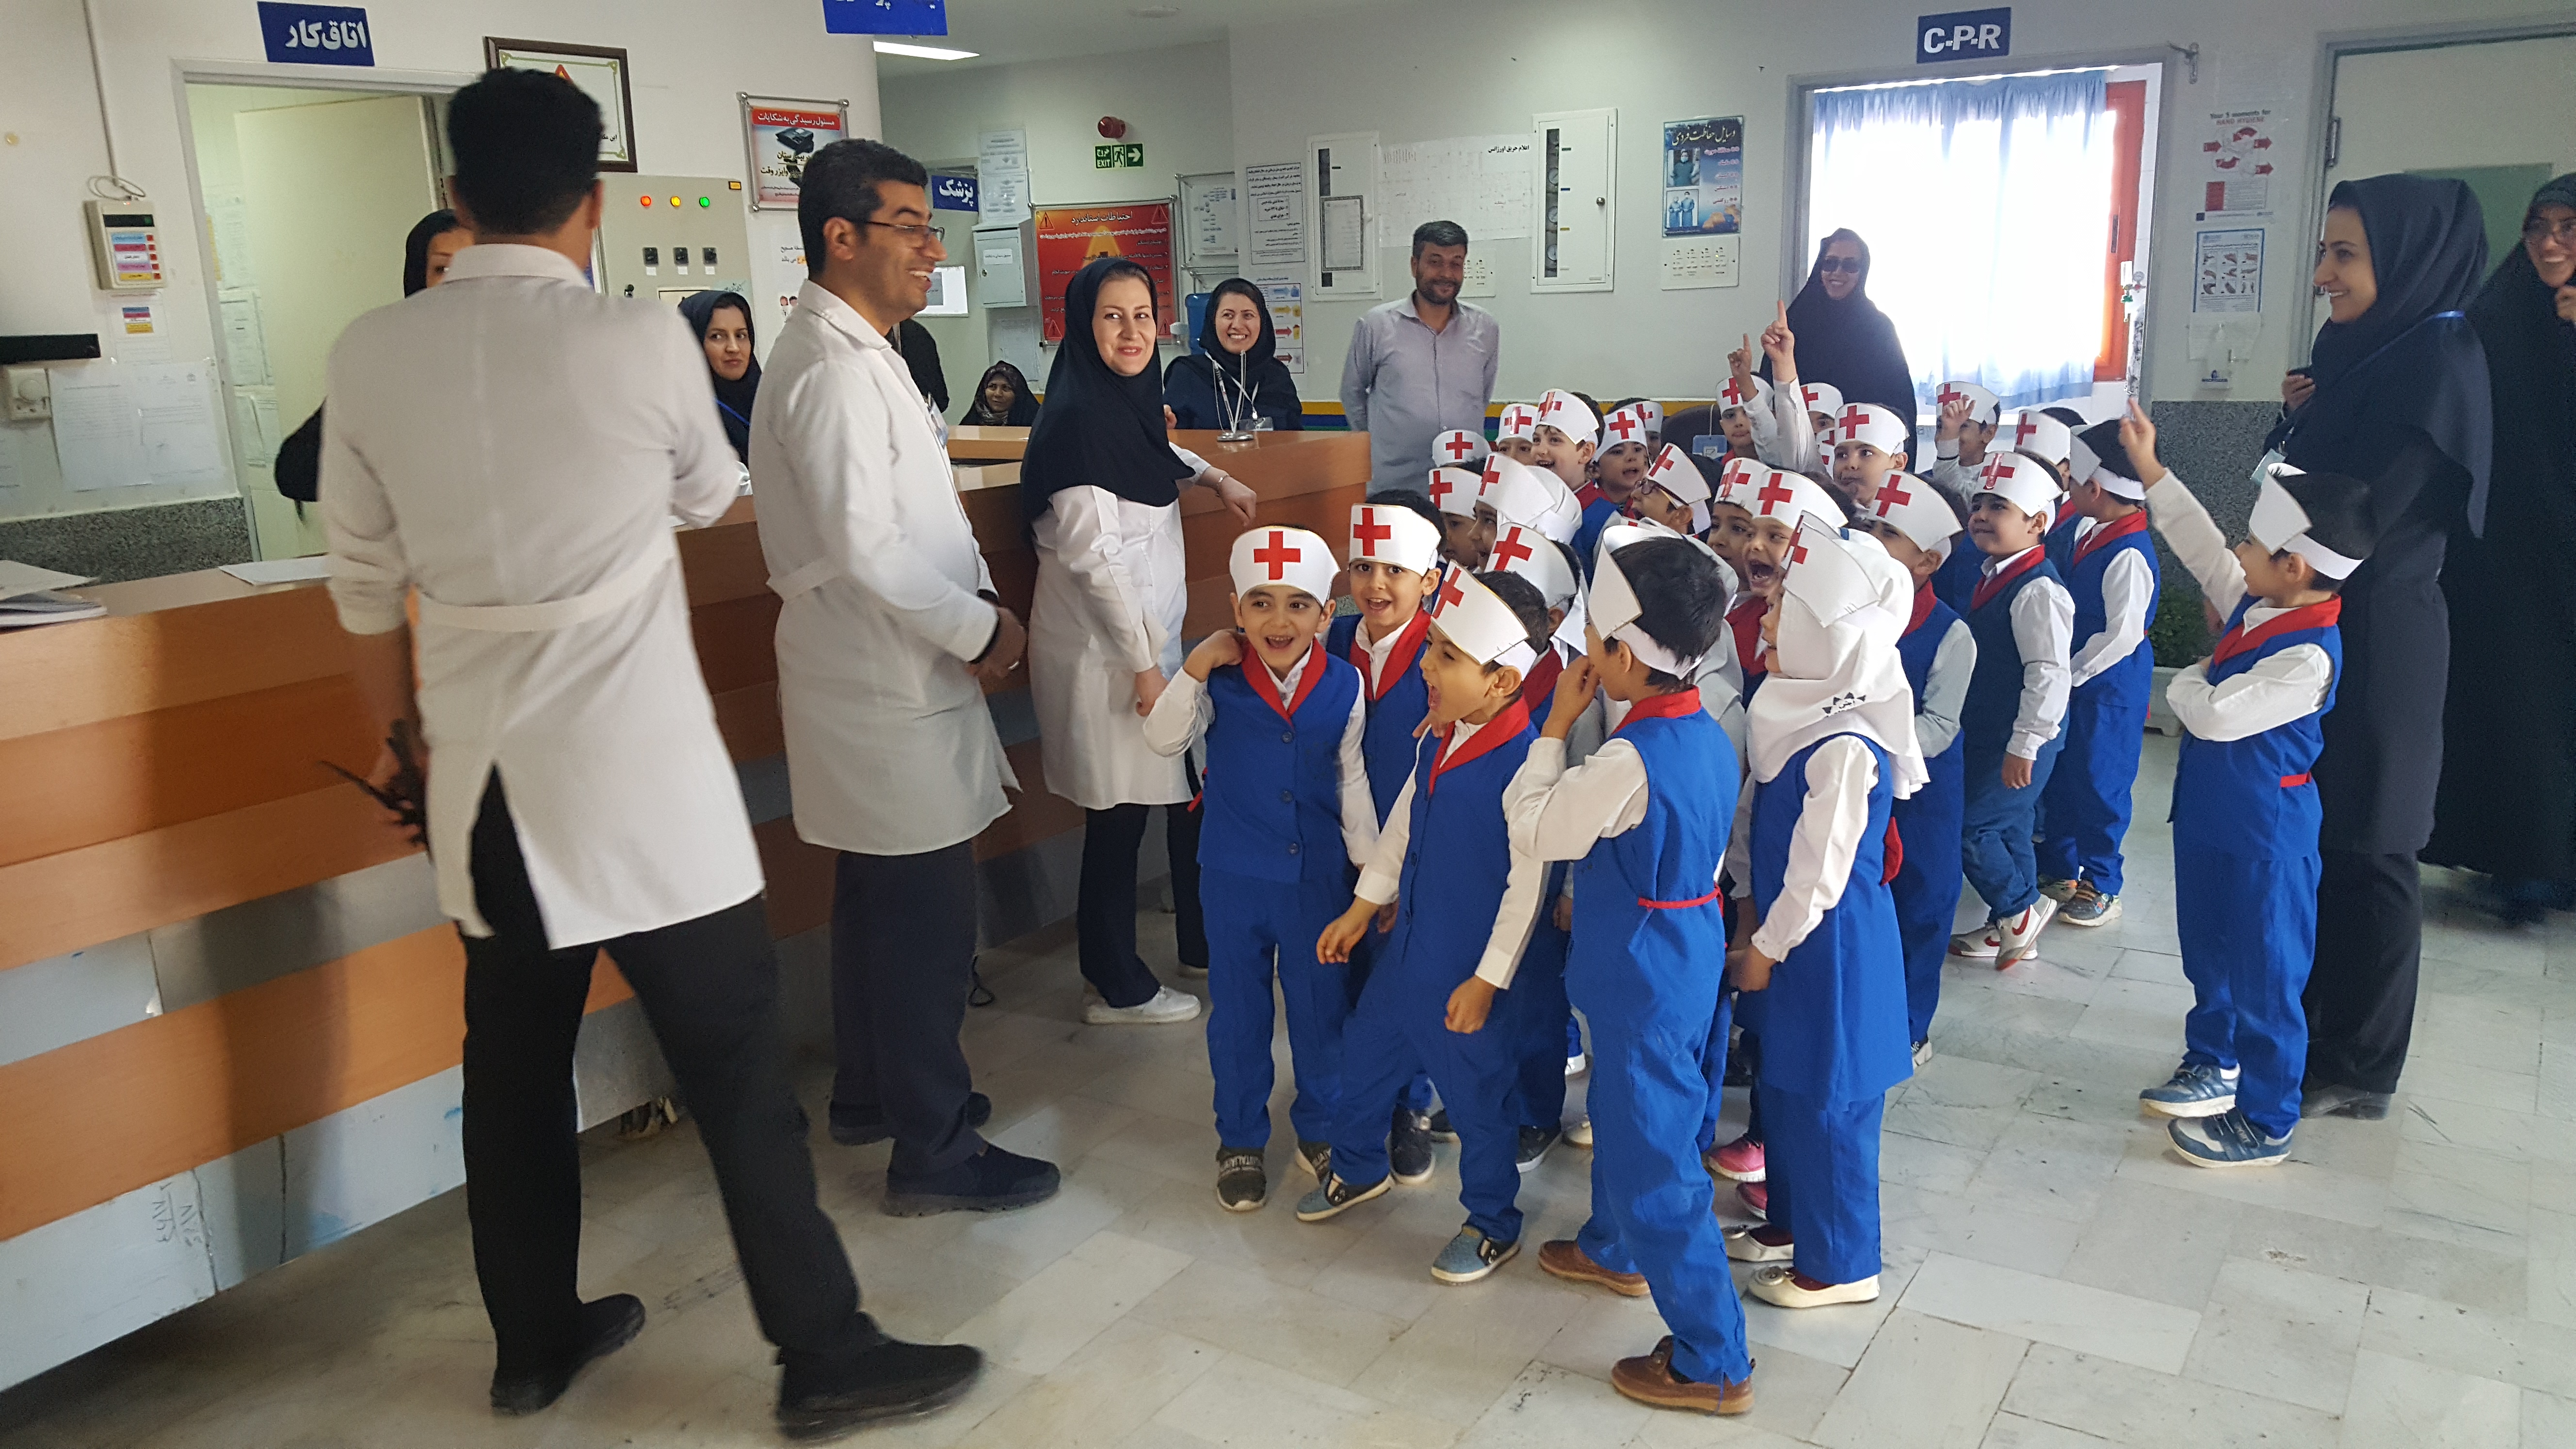 بازدید و اهدای گل به پرستاران بیمارستان شهدای فاروج از طرف بچه های مهدکودک